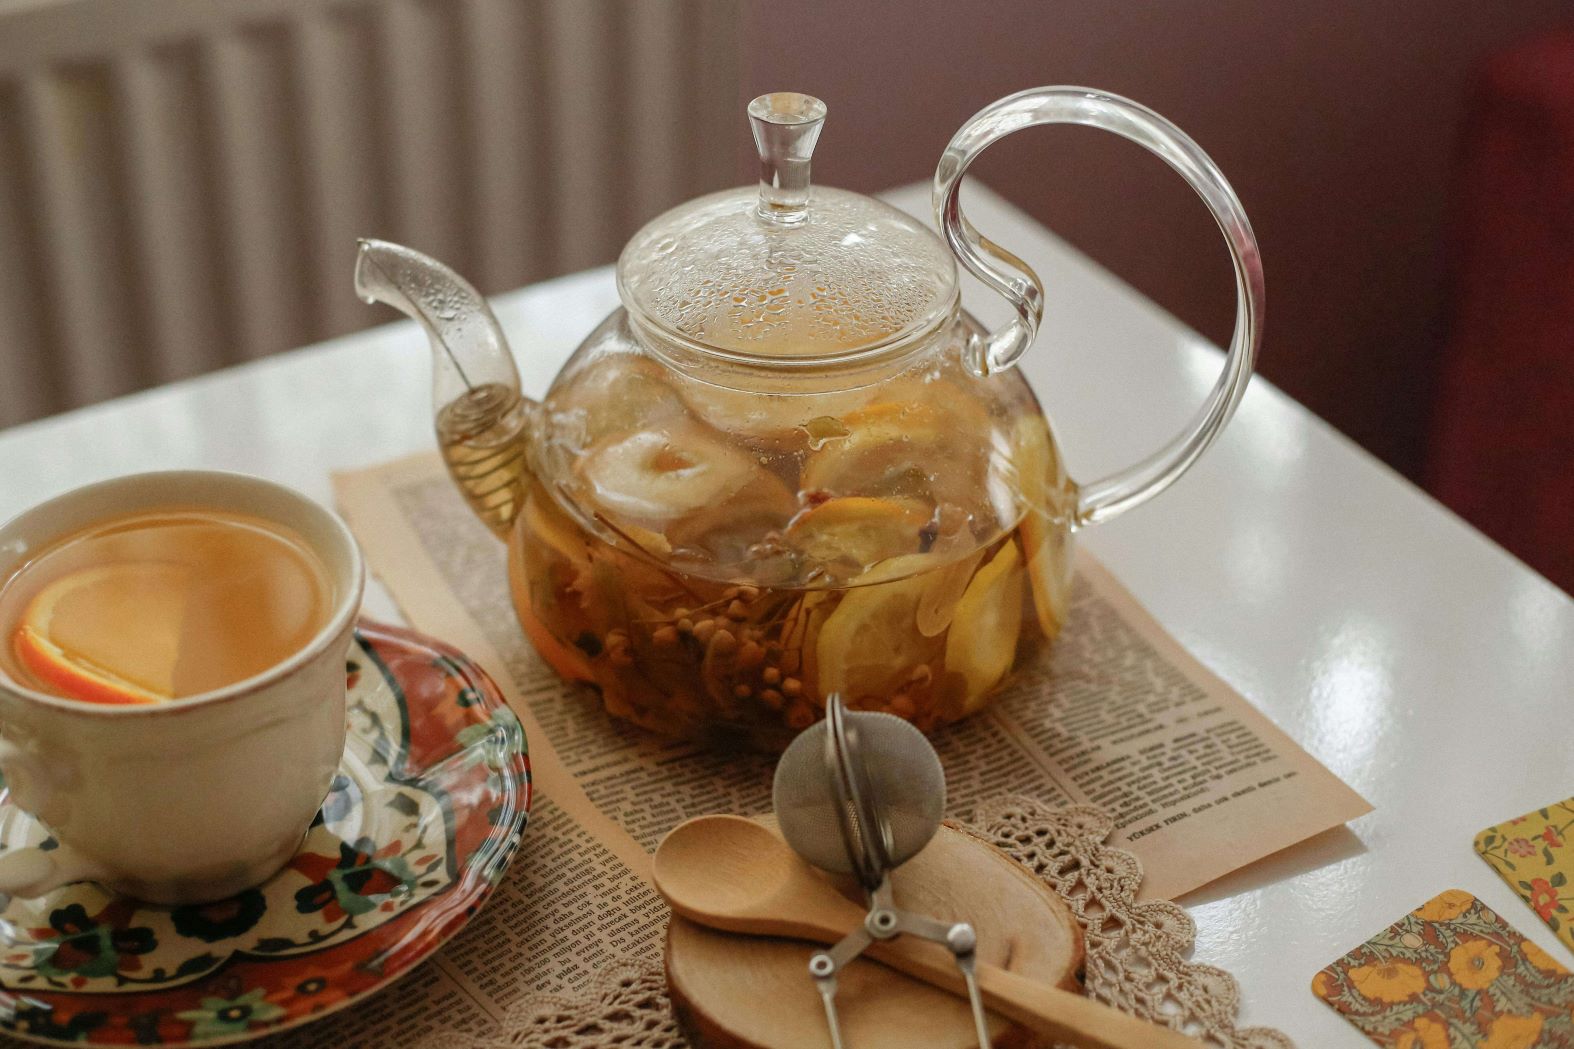 ¿Cuáles son los accesorios indispensables para preparar té a granel? ¿Qué tipo de tetera es mejor? Respondemos a estas preguntas y le recomendamos los mejores accesorios.